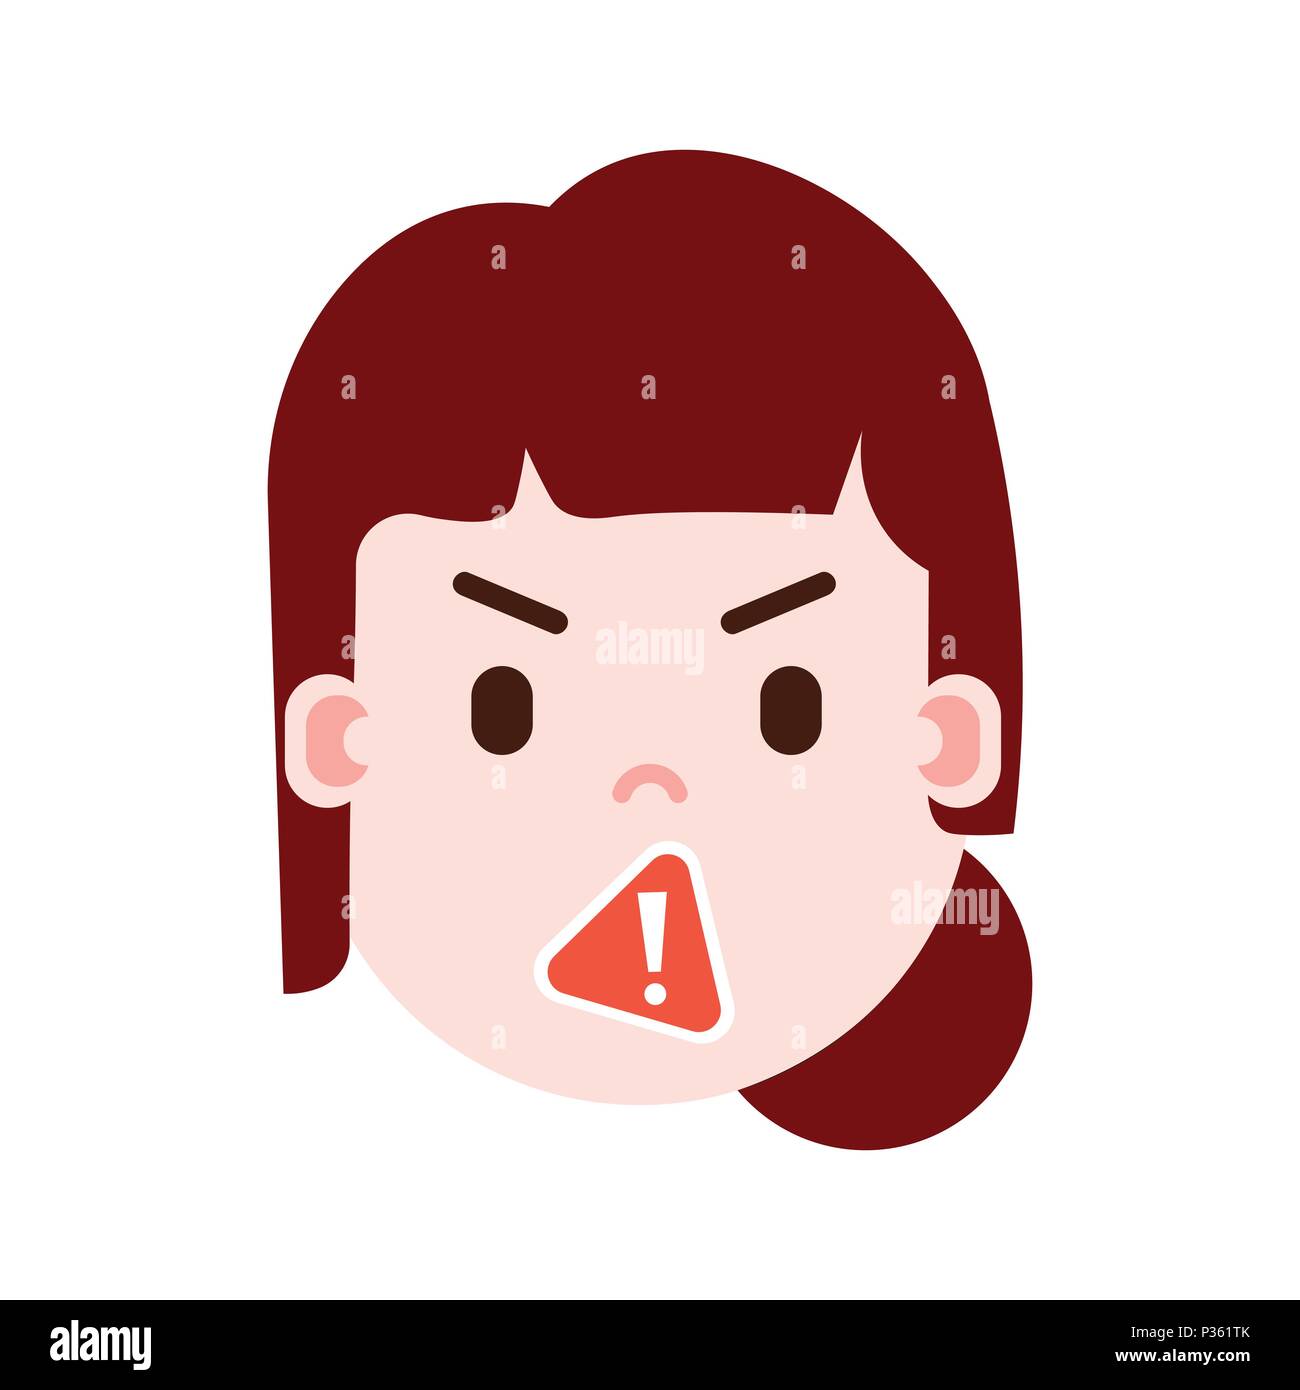 Mädchen Kopf emoji mit Gesichts Emotionen, Avatar, Frau Zensur Gesicht mit verschiedenen weiblichen Emotionen Konzept. Flaches Design. Stock Vektor